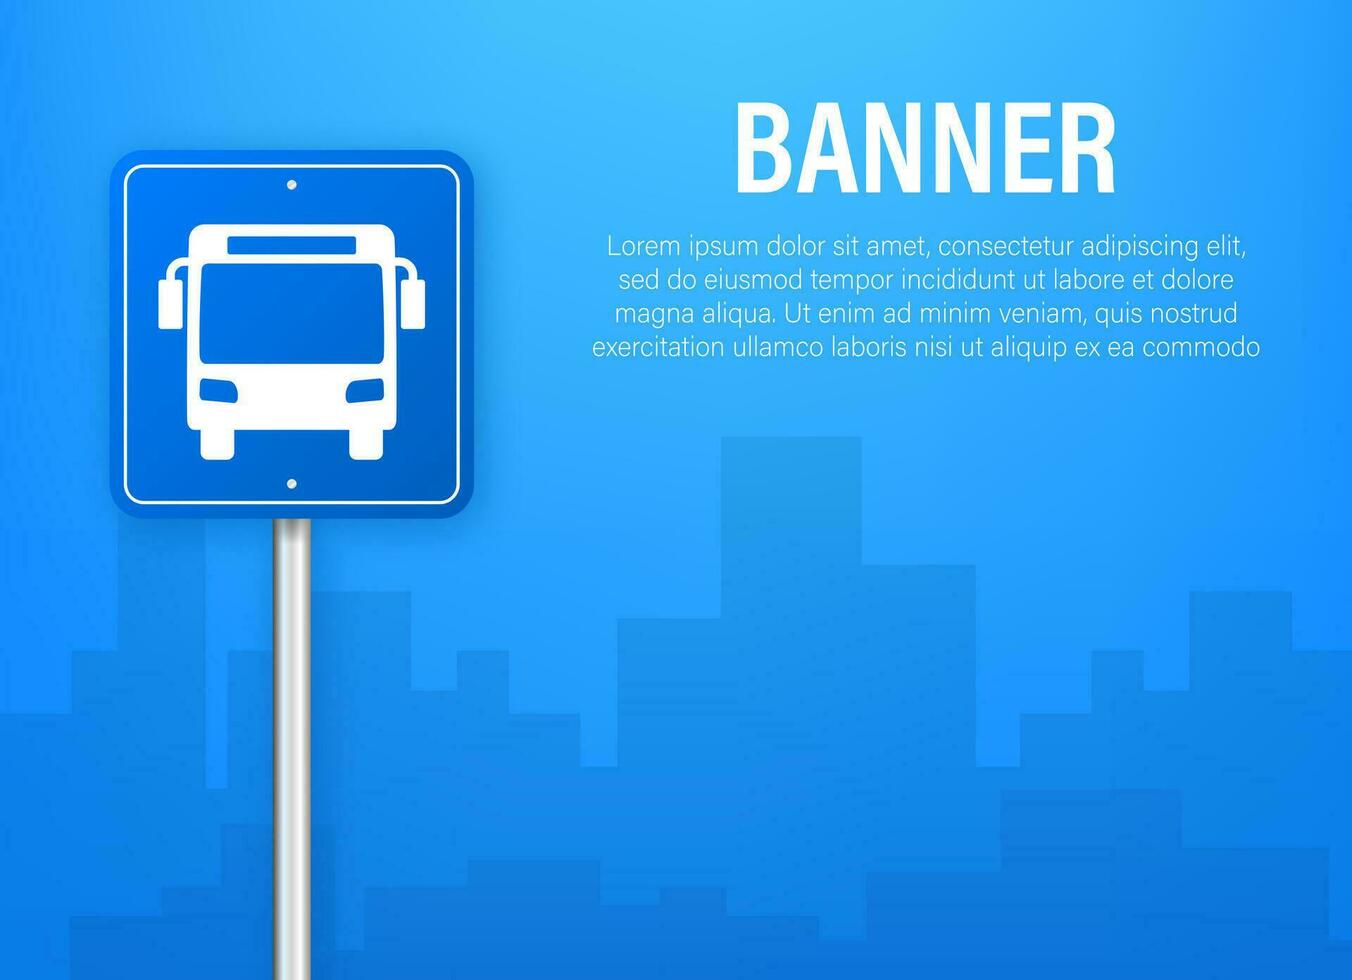 blå baner med buss station. vektor linje illustration. vektor platt illustration.